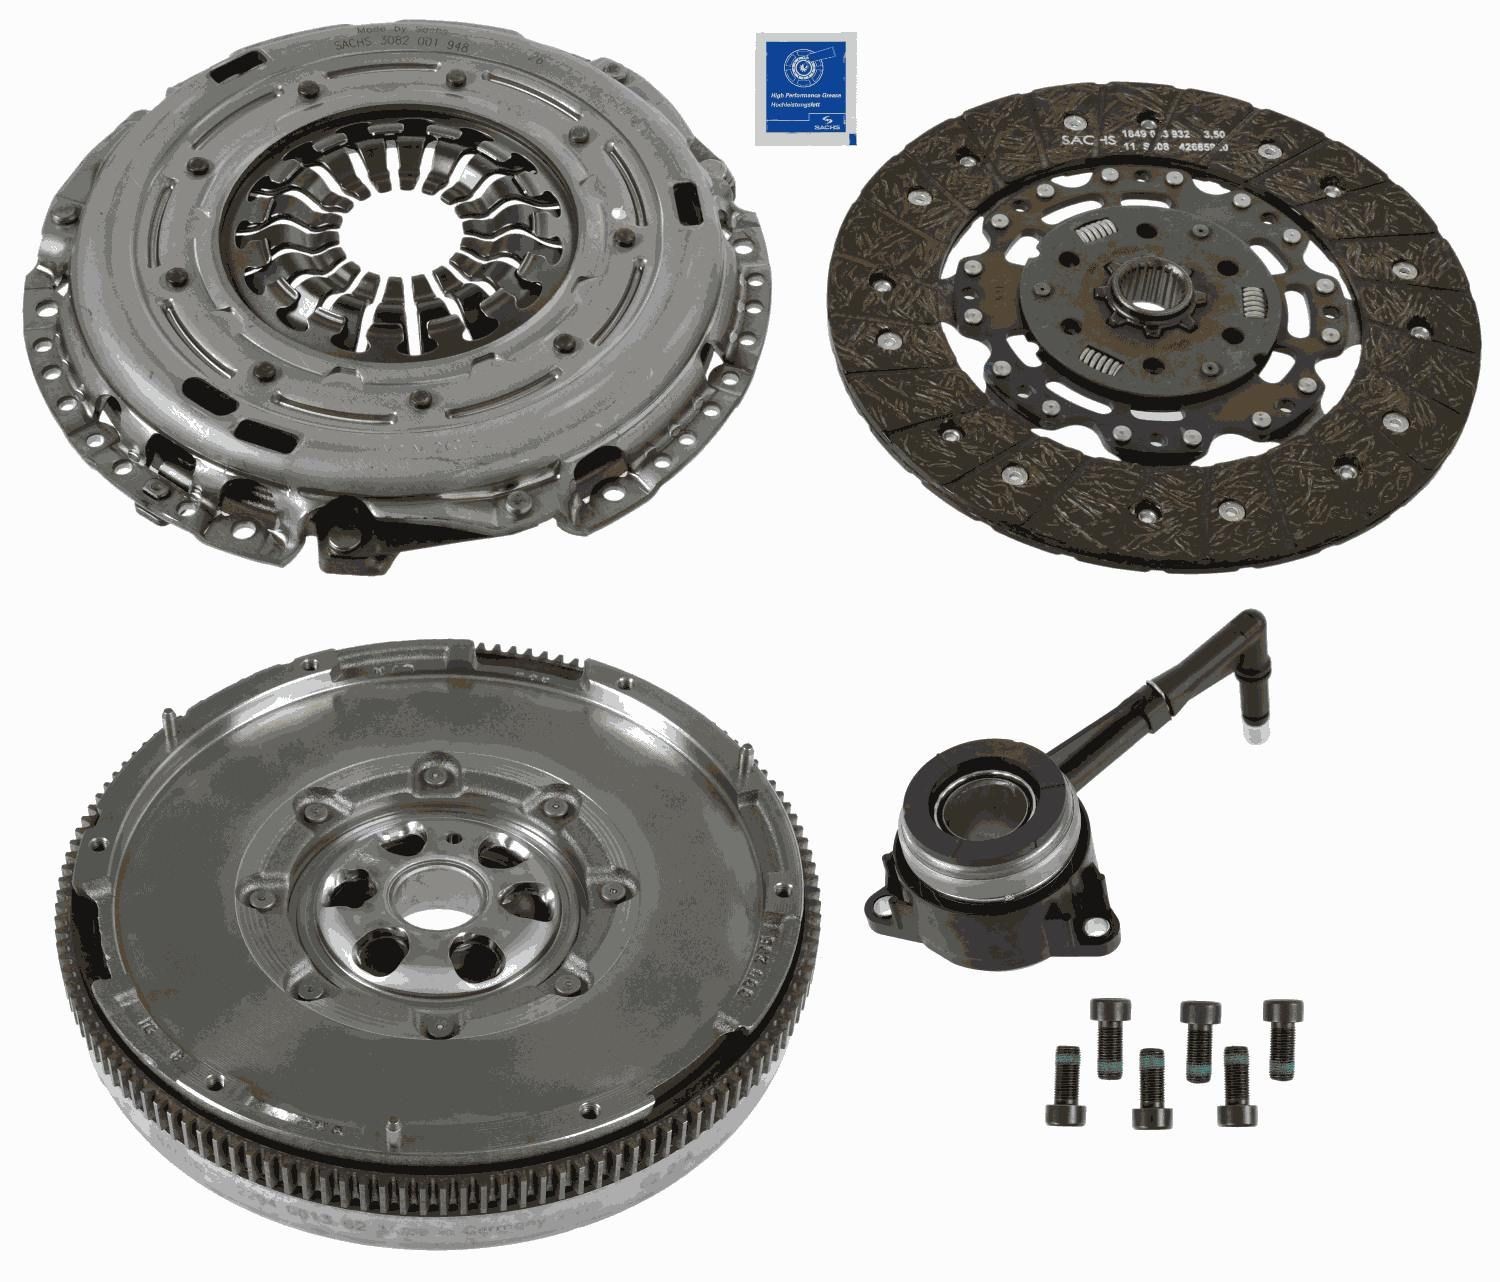 SACHS 2290 601 141 Volkswagen PASSAT 2014 Clutch and flywheel kit